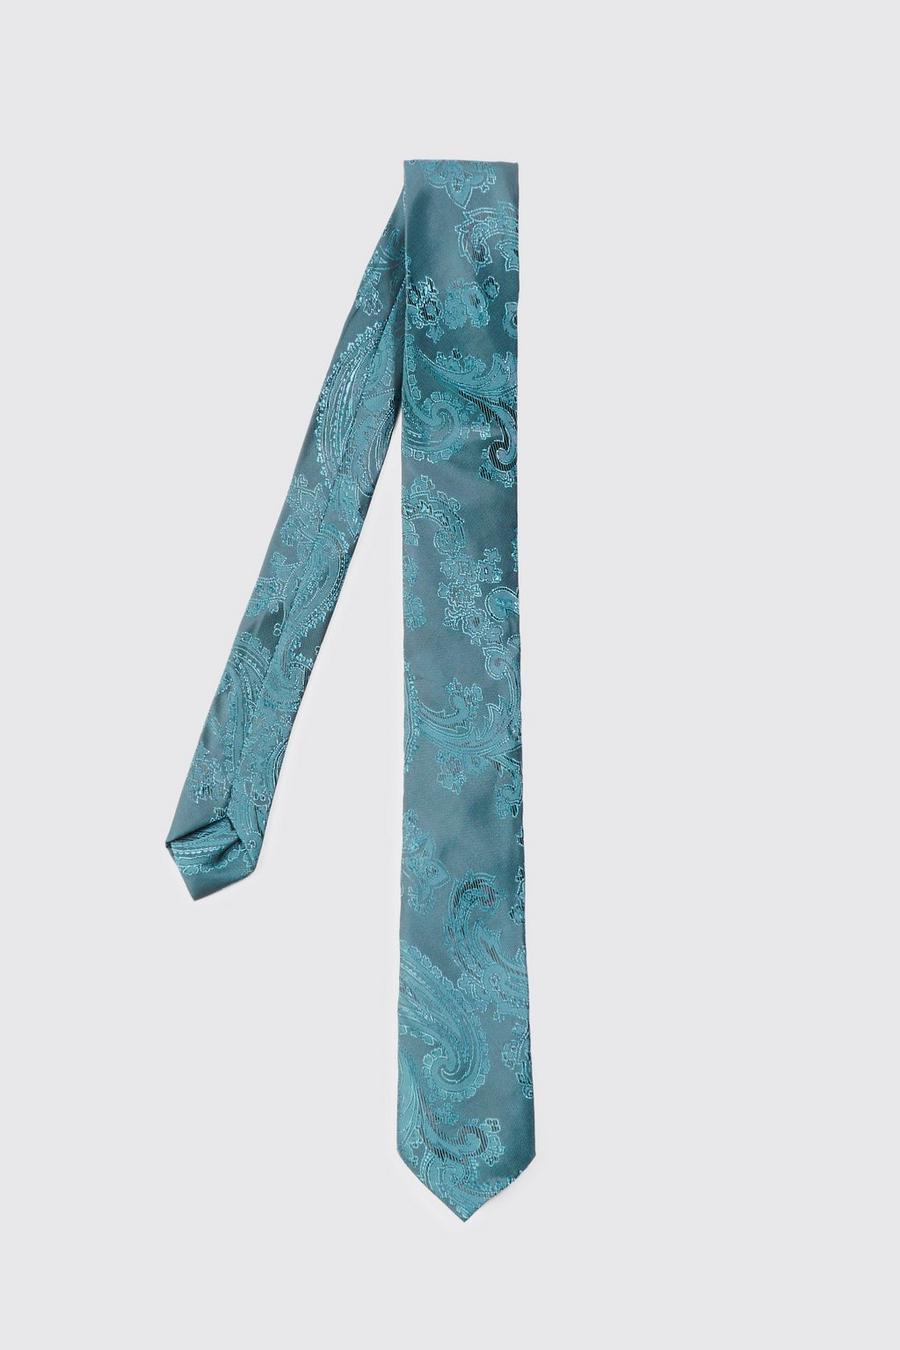 Corbata fina lisa con estampado cachemira, Teal